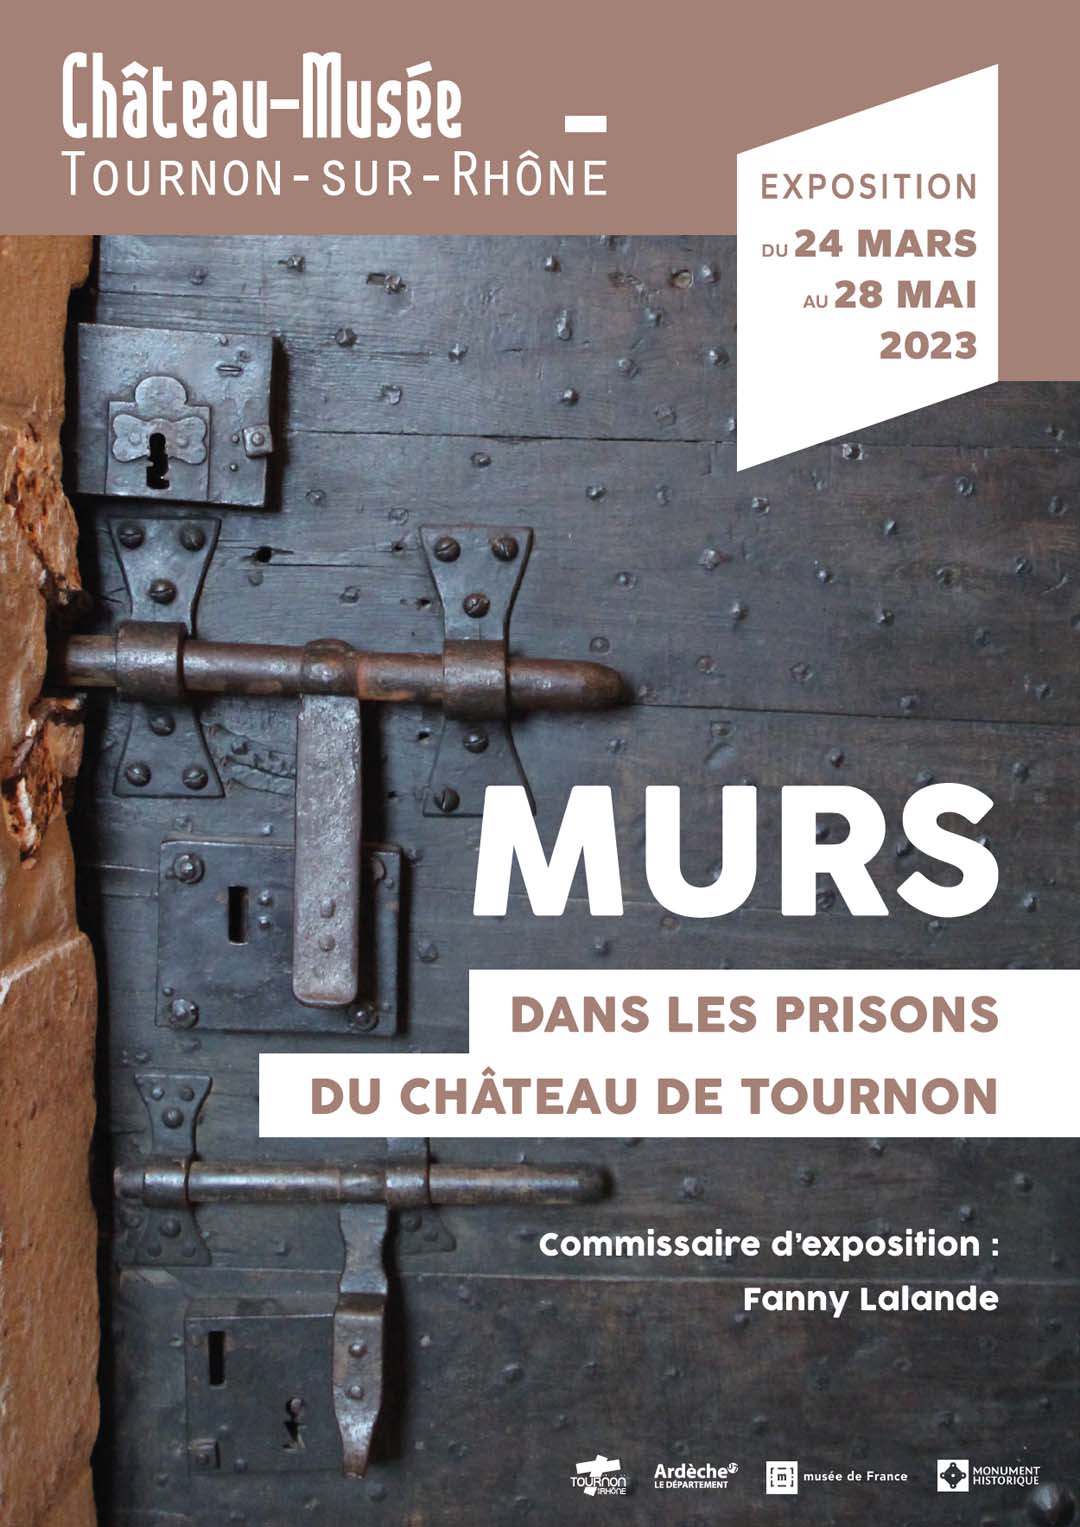 MURS DANS LES PRISONS DU CHÂTEAU DE TOURNON. Exposition du 24 mars au 28 mai 2023 au Château-musée de Tournon-sur-Rhône.